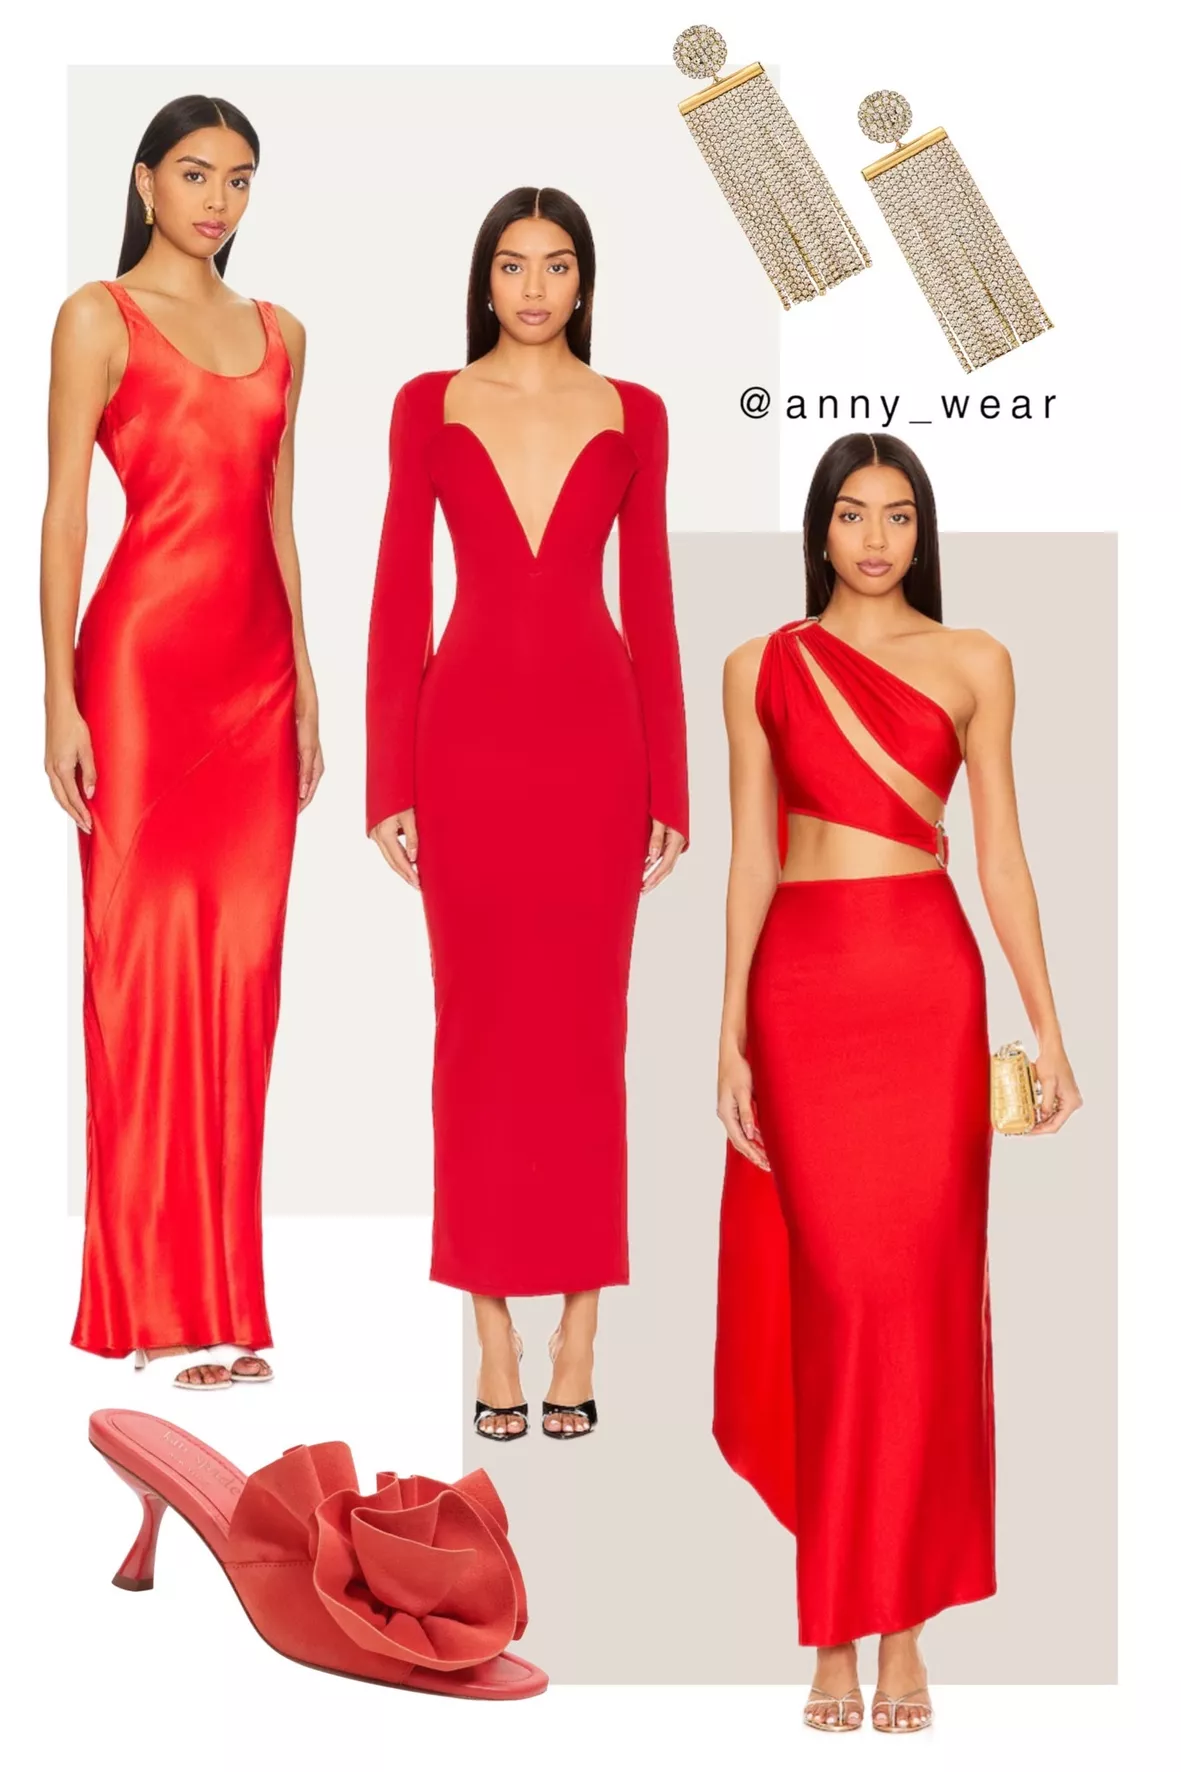 Adelyn Dress - Short Sleeve Tie Waist Blazer Mini Dress in Red